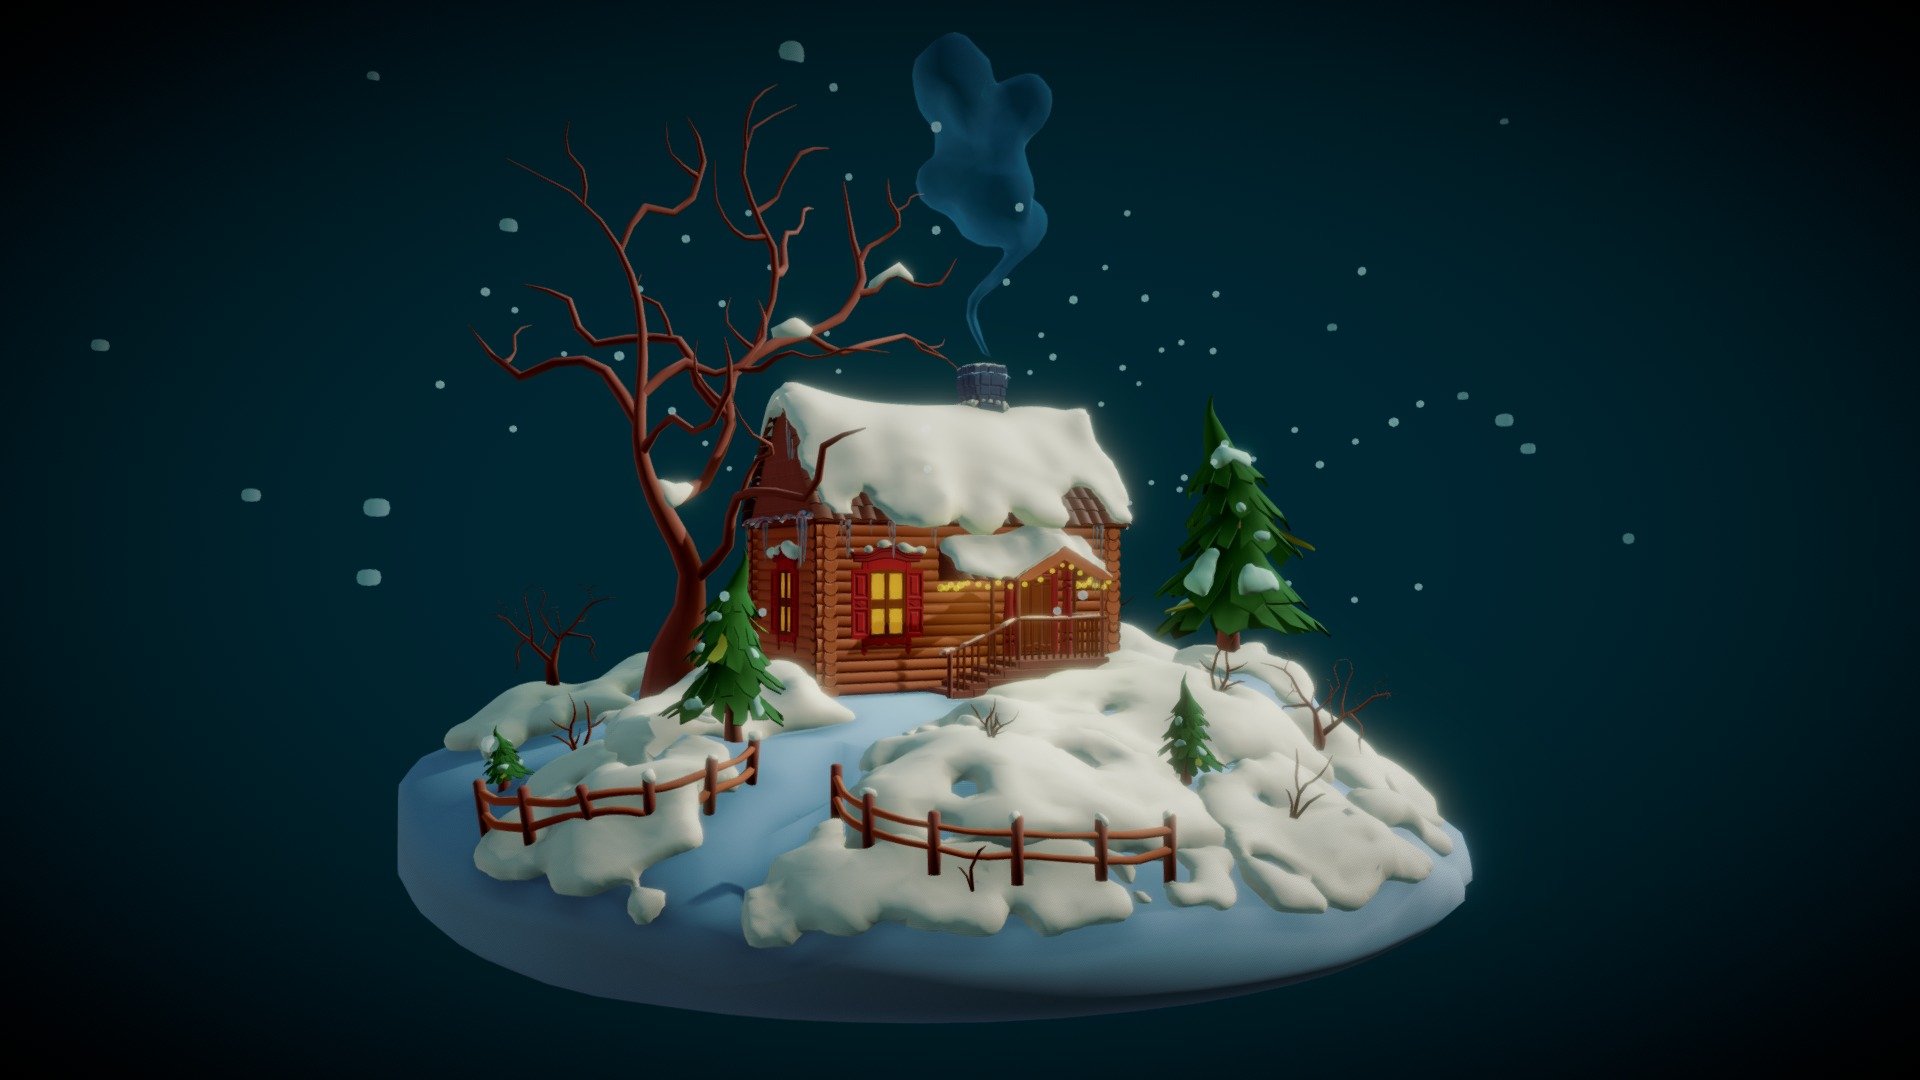 This scene made in Blender for Sketchfab Modeling Challenge: Holidays 3d model